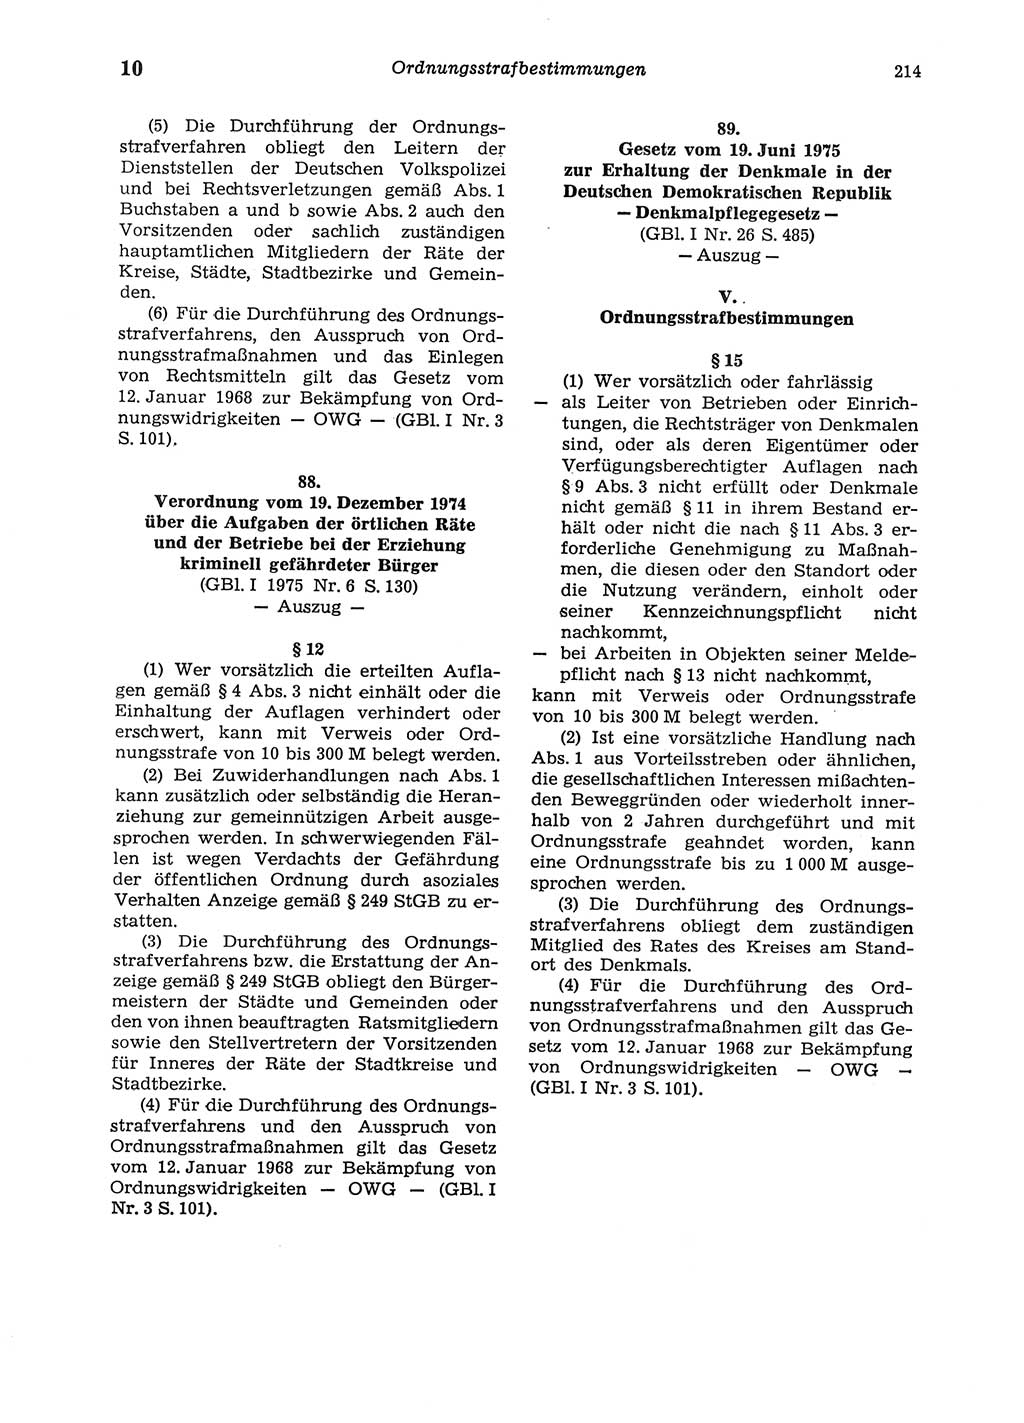 Strafgesetzbuch (StGB) der Deutschen Demokratischen Republik (DDR) und angrenzende Gesetze und Bestimmungen 1975, Seite 214 (StGB DDR Ges. Best. 1975, S. 214)